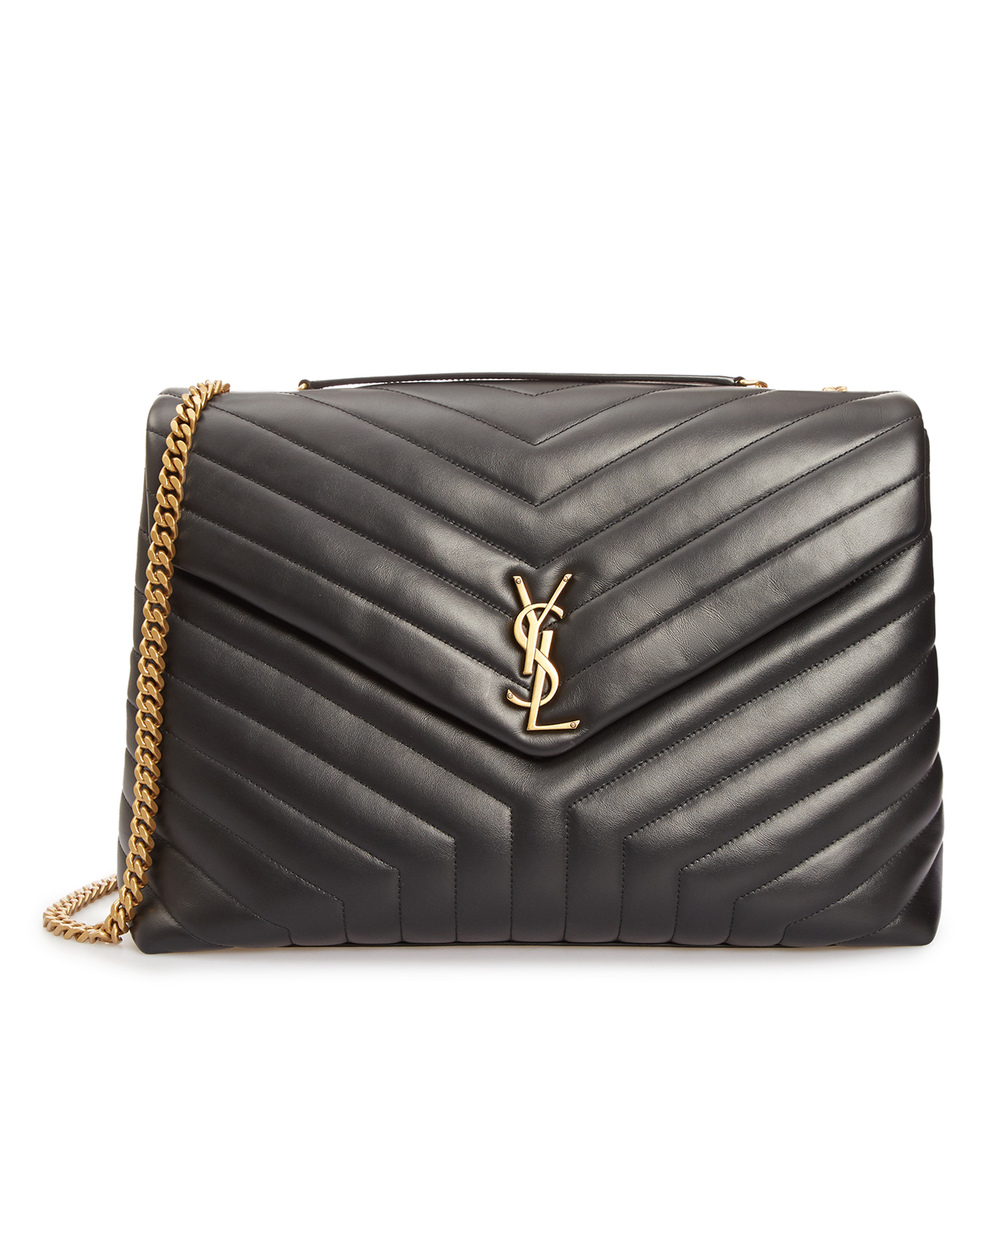 Кожаная сумка Loulou Large Saint Laurent 574947-DV727, черный цвет • Купить в интернет-магазине Kameron